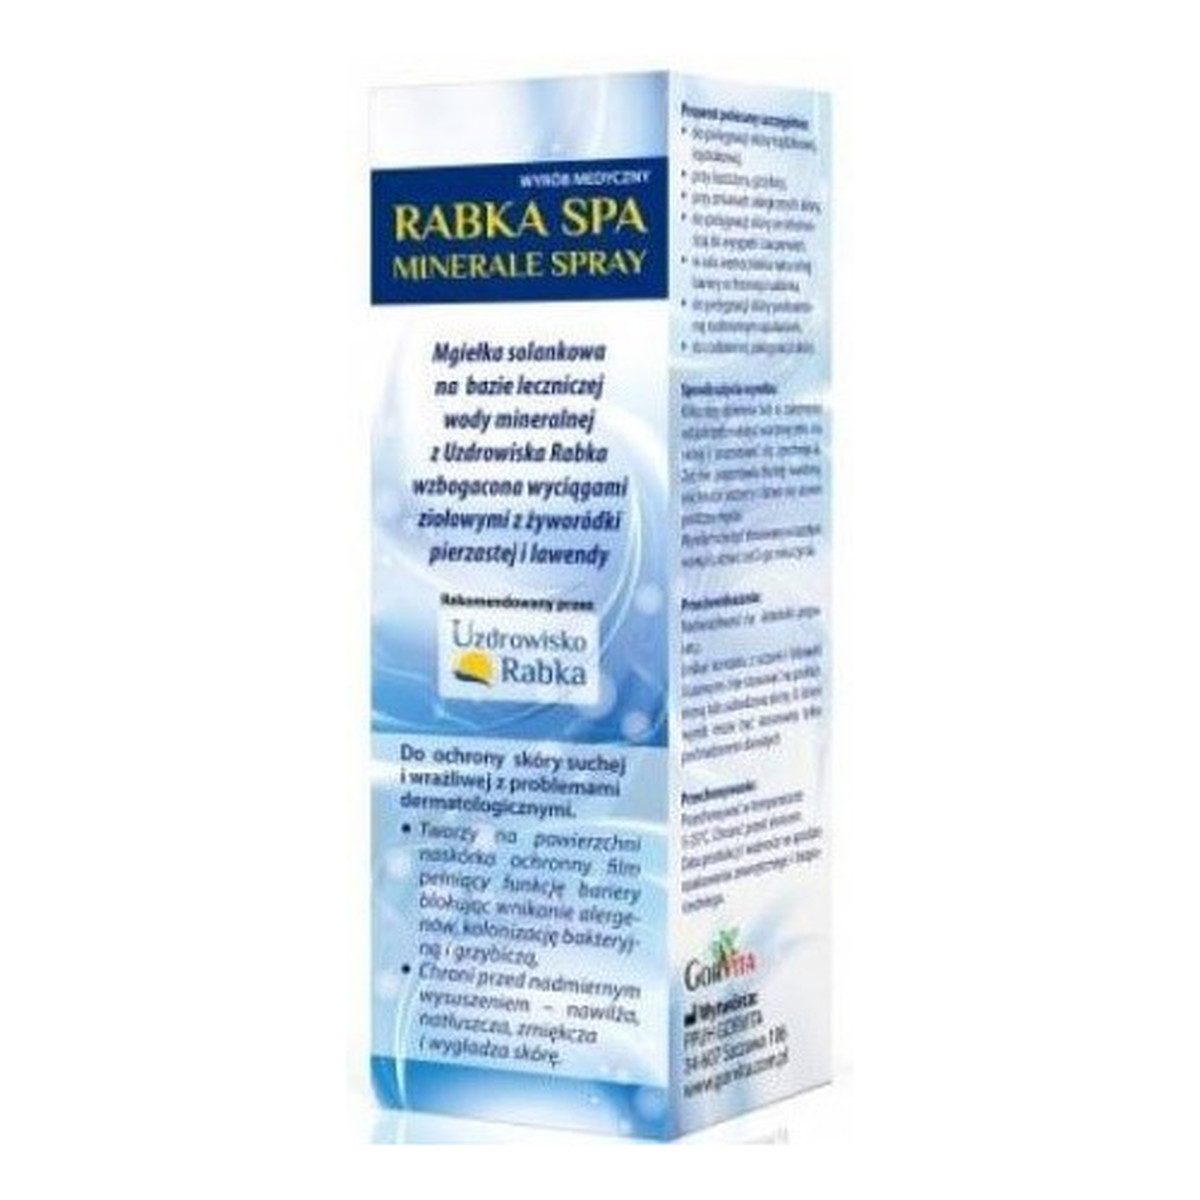 Gorvita Rabka Spa Minerale Spray mgiełka solankowa do ochrony skóry suchej i wrażliwej 215ml